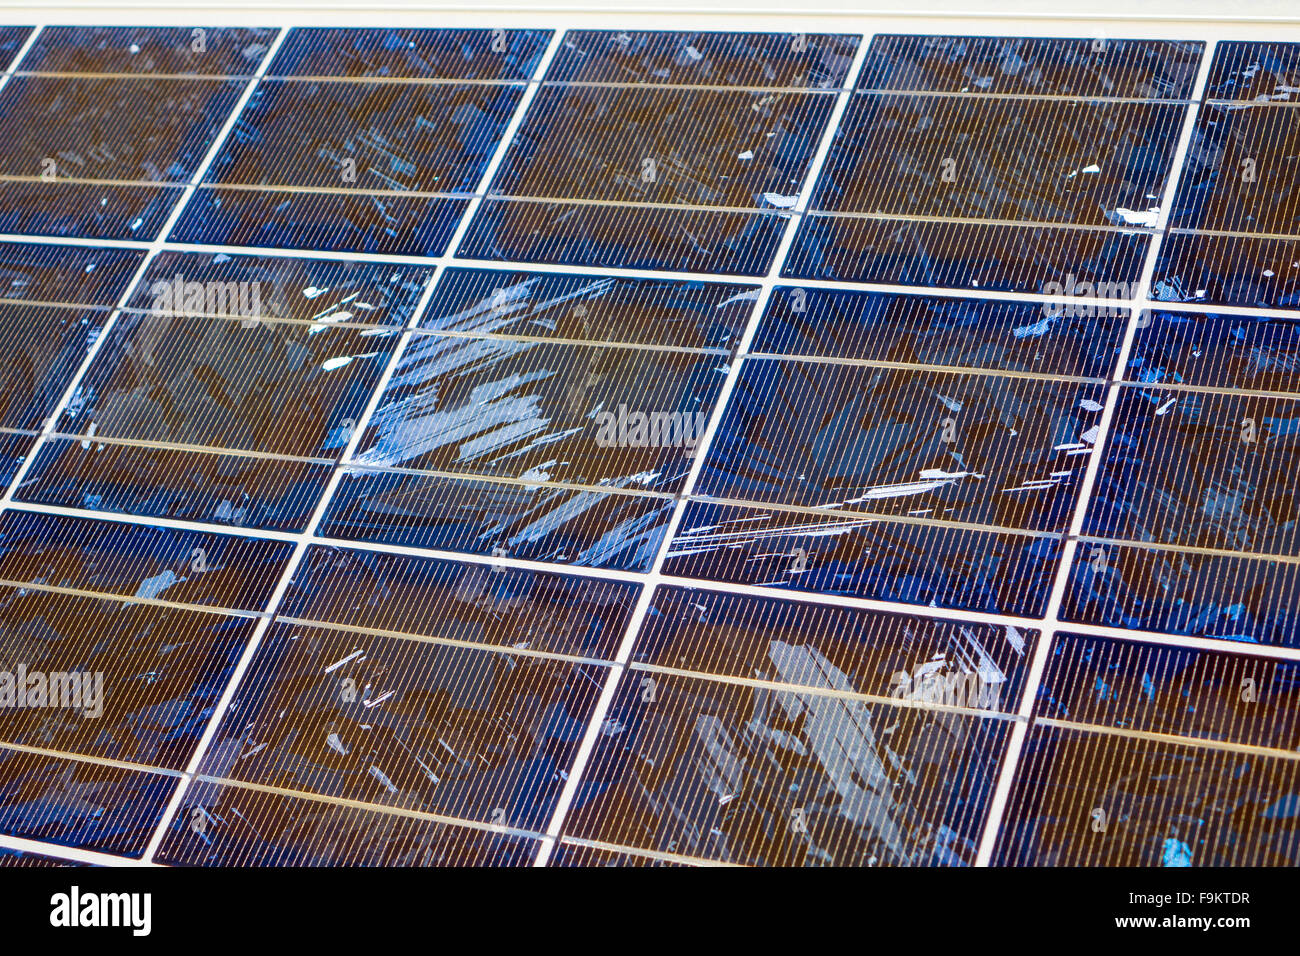 Nahaufnahme eines Rasters von Silizium-Zellen in Solar-panels Stockfoto